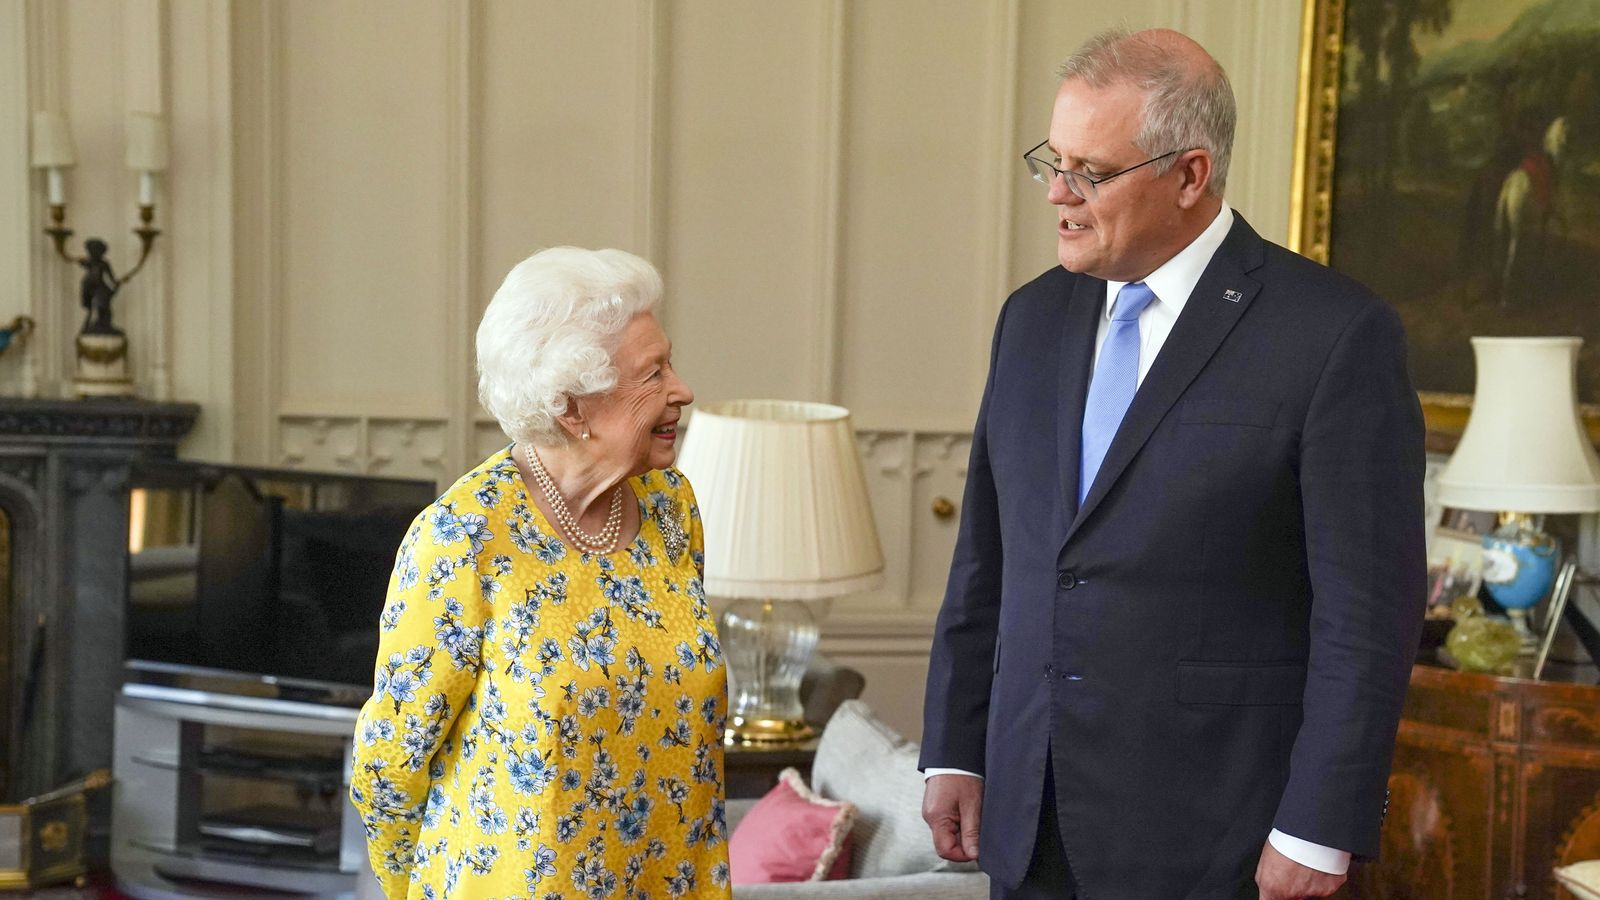 ملكة بريطانيا خلال استقبالها لرئيس وزراء استراليا في قلعة وندسور